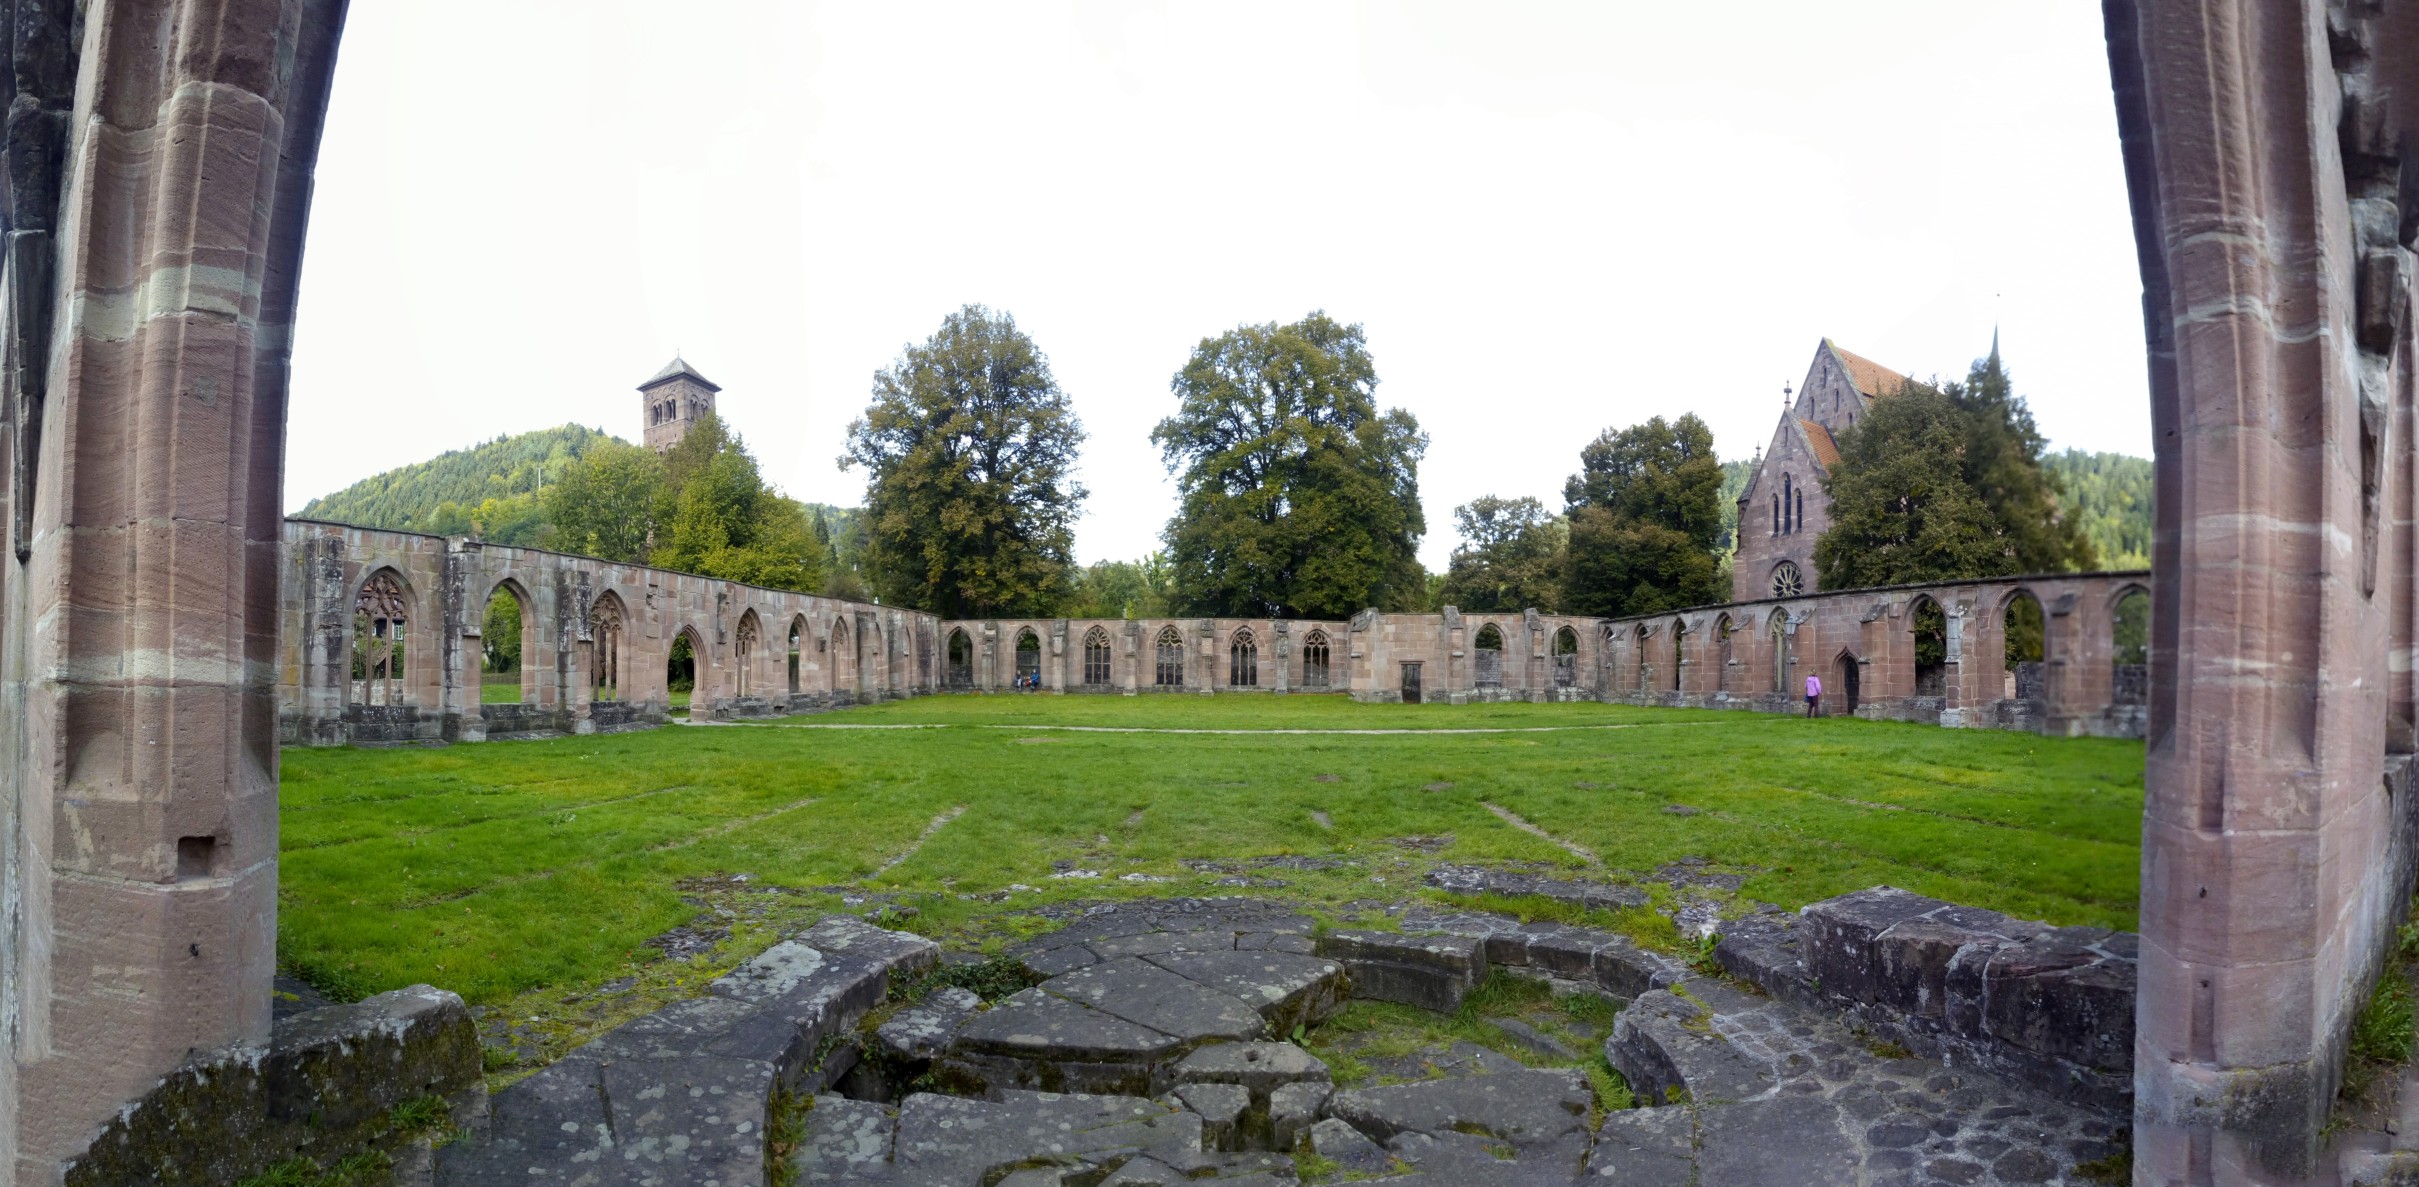 Klosterruine Hirsau - dies war ein Benediktinerkloster in Hirsau im Nordschwarzwald.